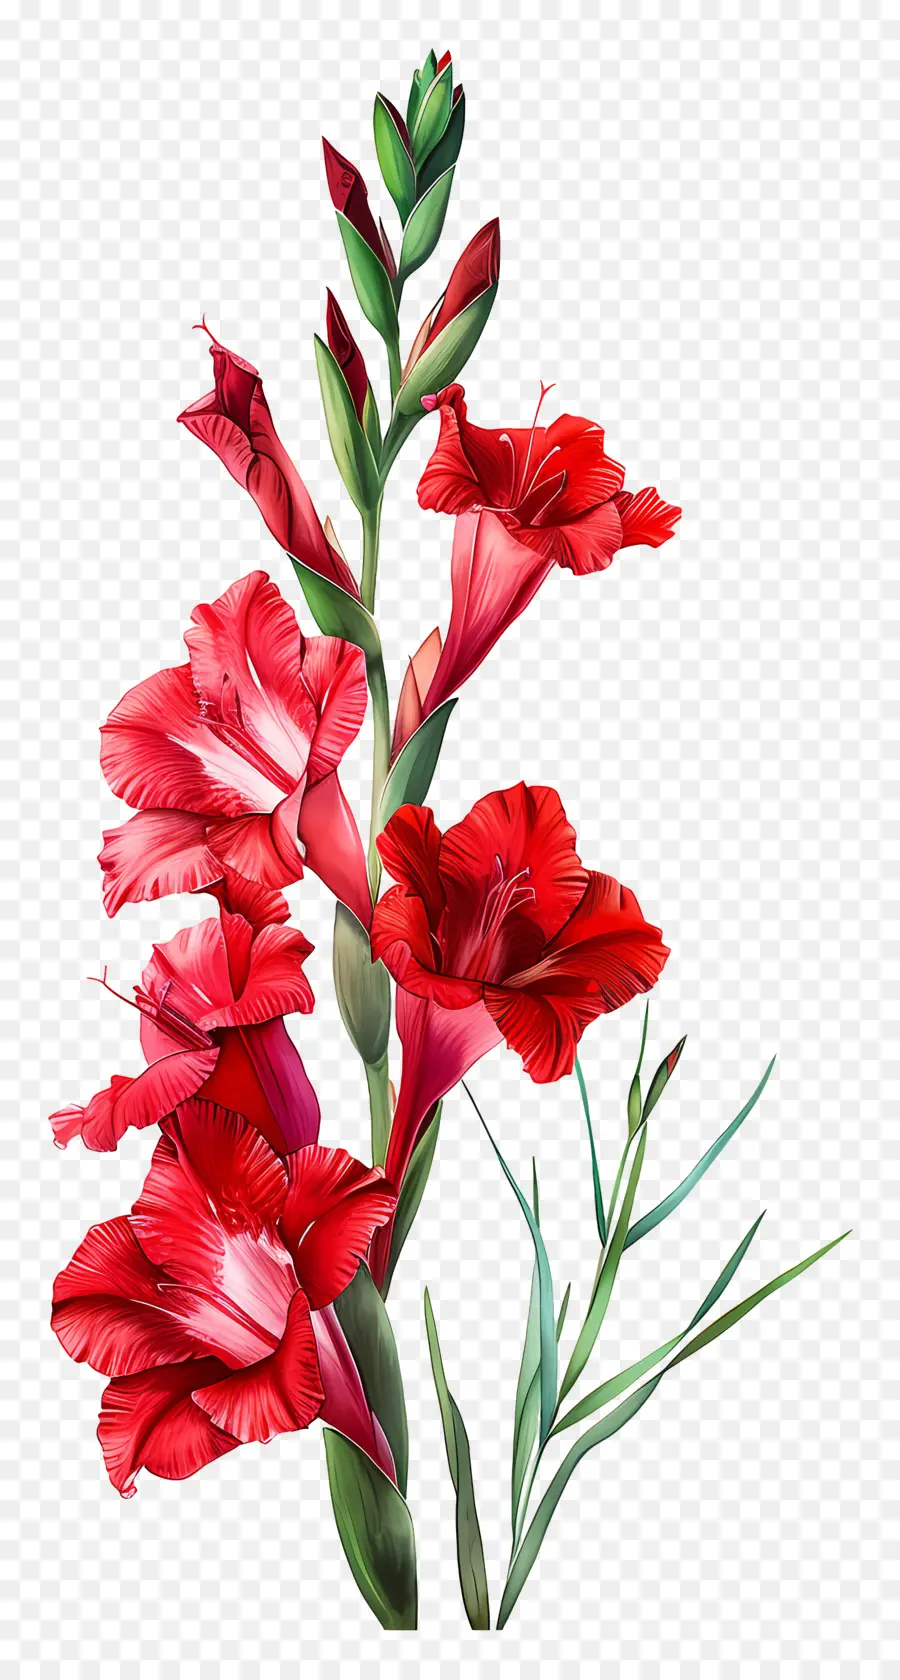 Red Gladioli Hoa đỏ sắp xếp đối xứng màu sắc rực rỡ Hoa - Sự sắp xếp đối xứng của những bông hoa màu đỏ rực rỡ